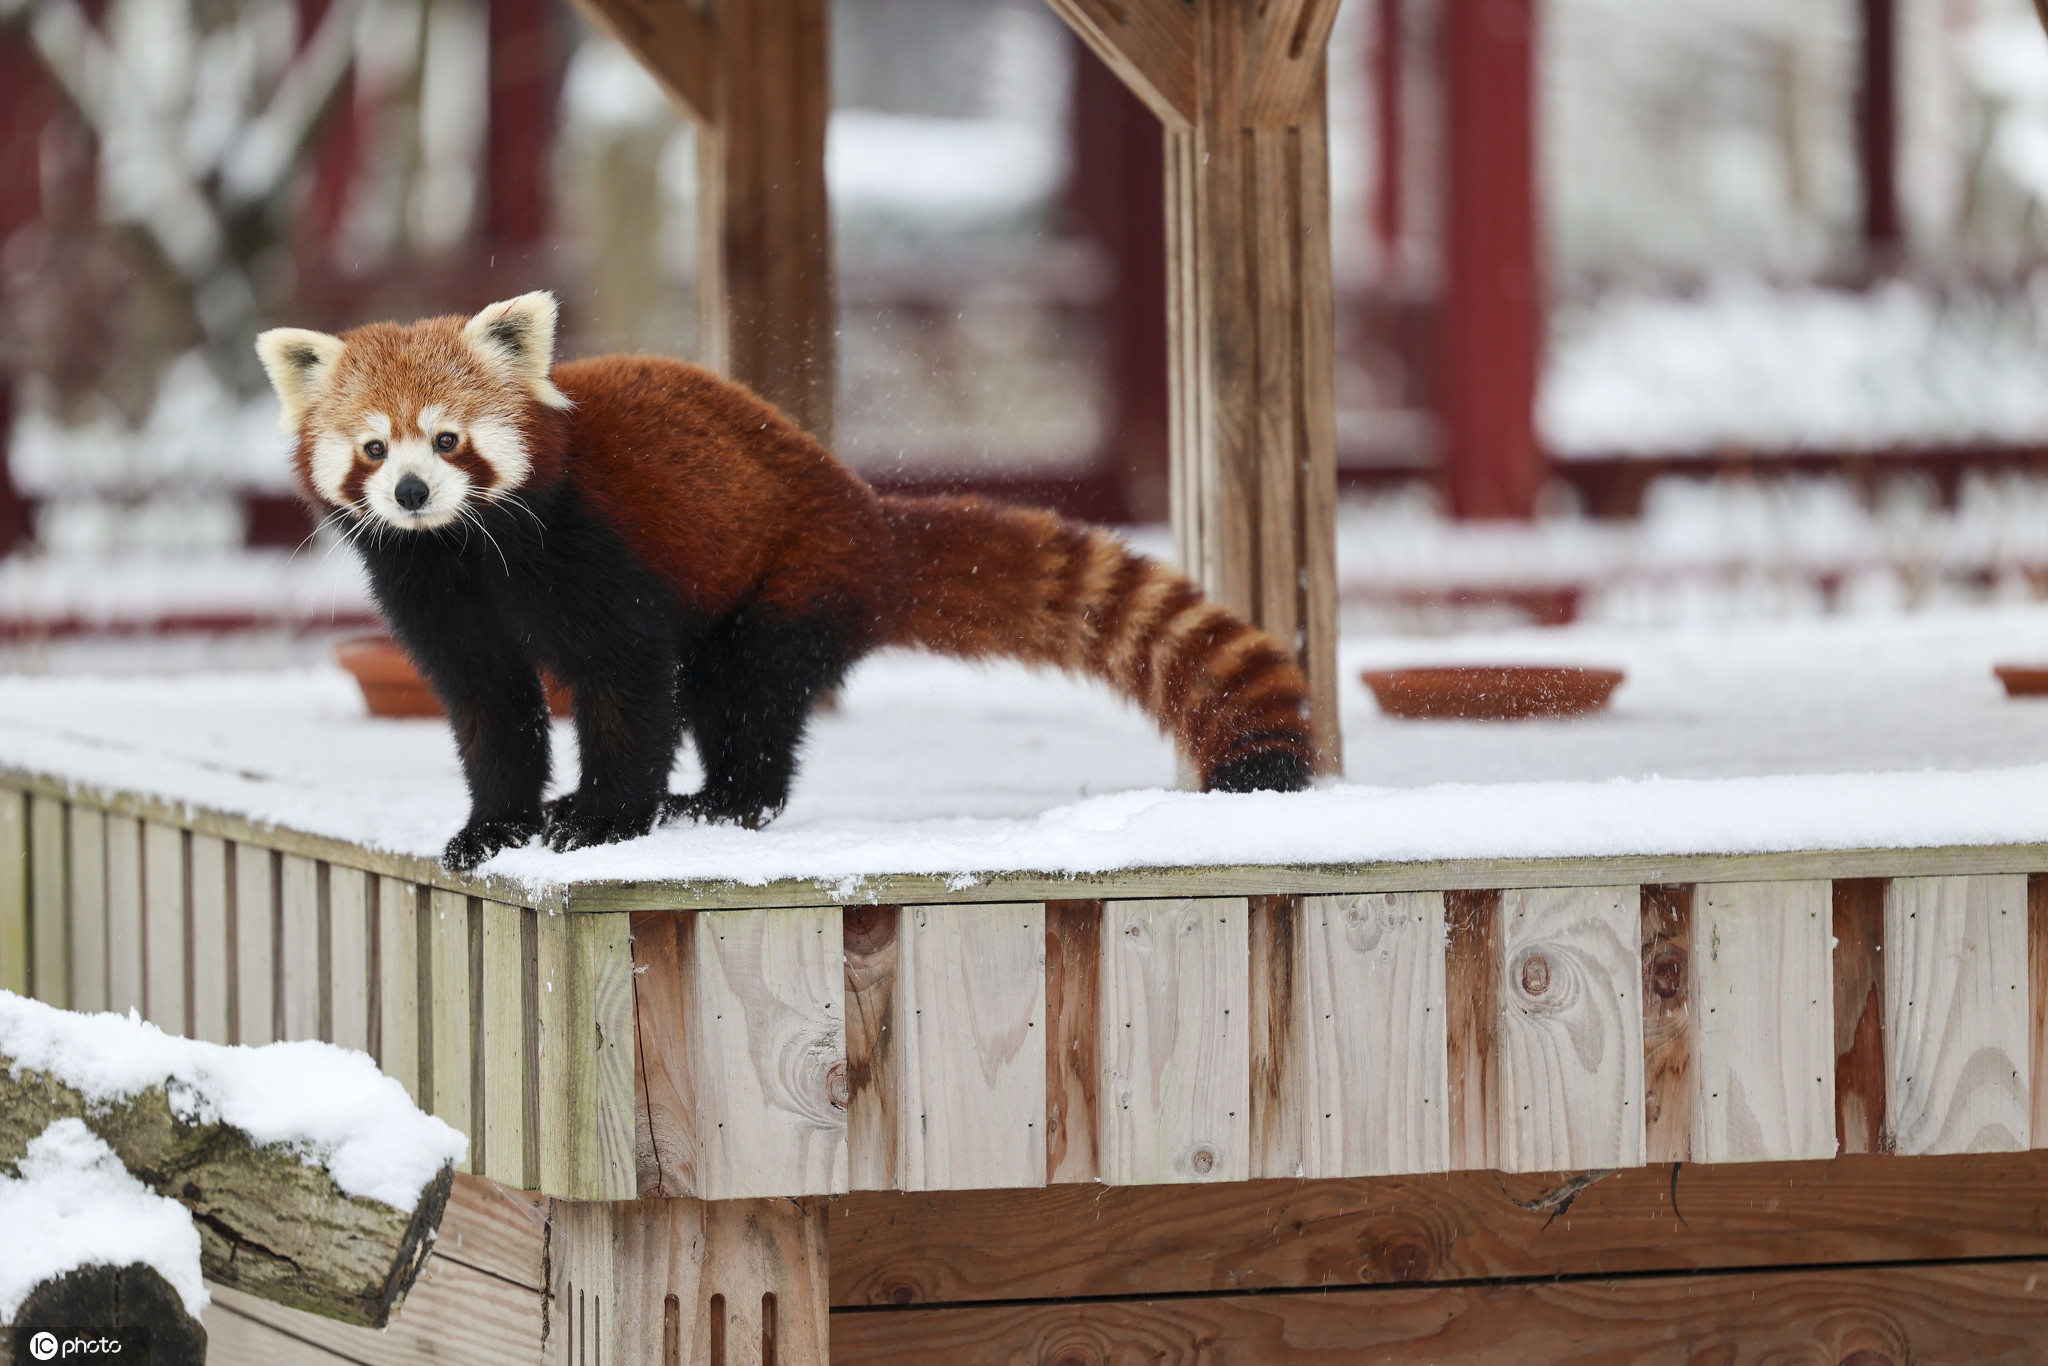 比利时小动物享受冬日雪趣大熊猫雪中嬉戏打闹太萌了